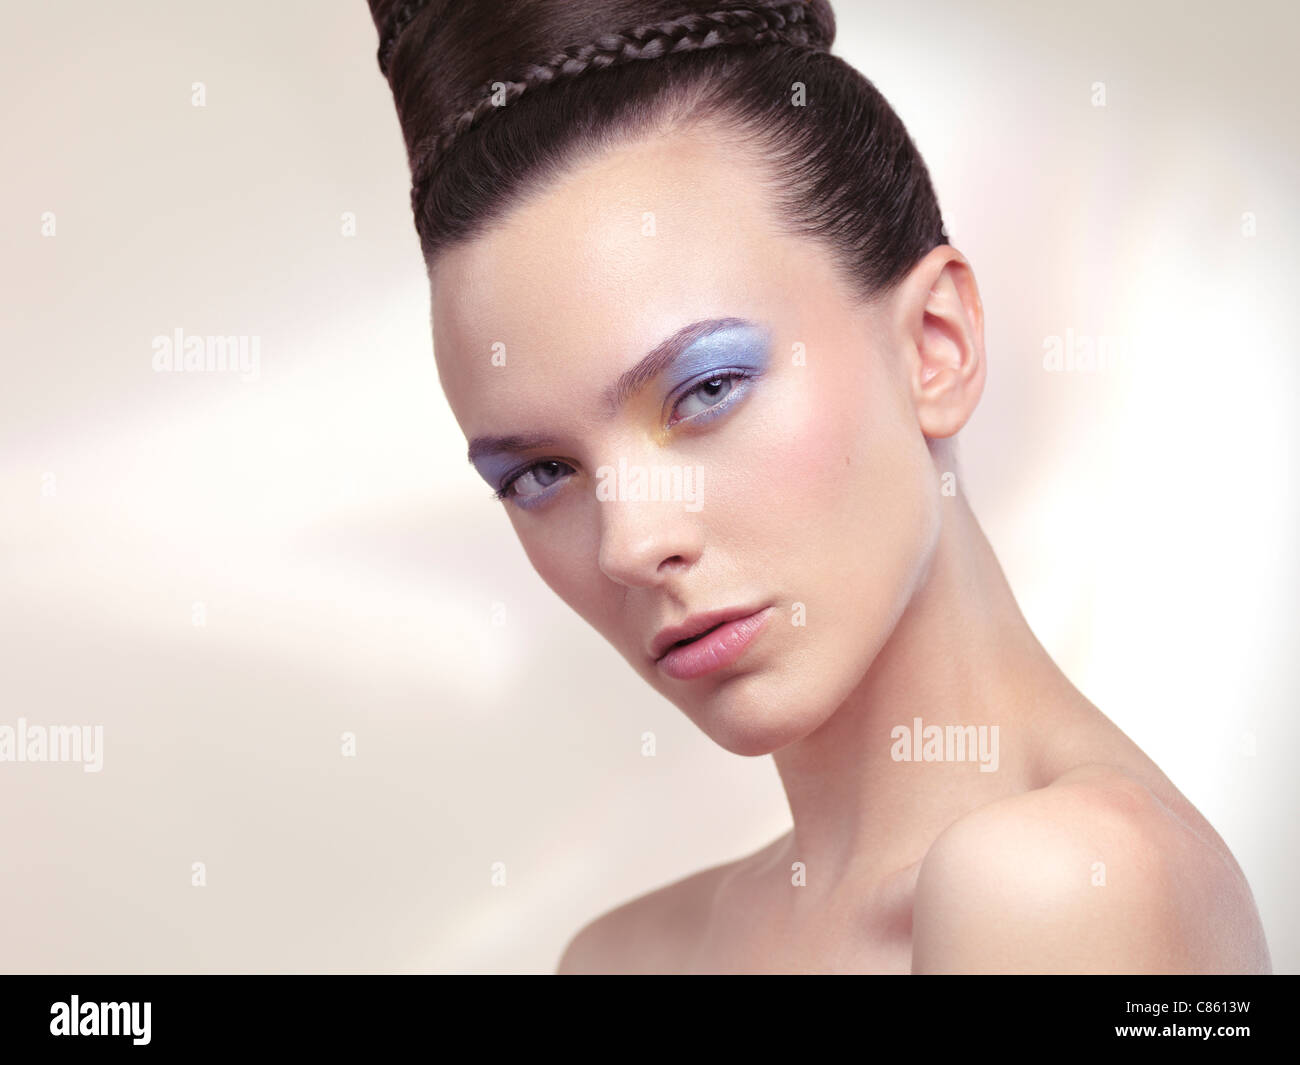 Führerschein und Drucke auf MaximImages.com - Schönheitsporträt einer jungen Frau mit weichem Pastellfarben-Make-up und stilvoller Frisur Stockfoto